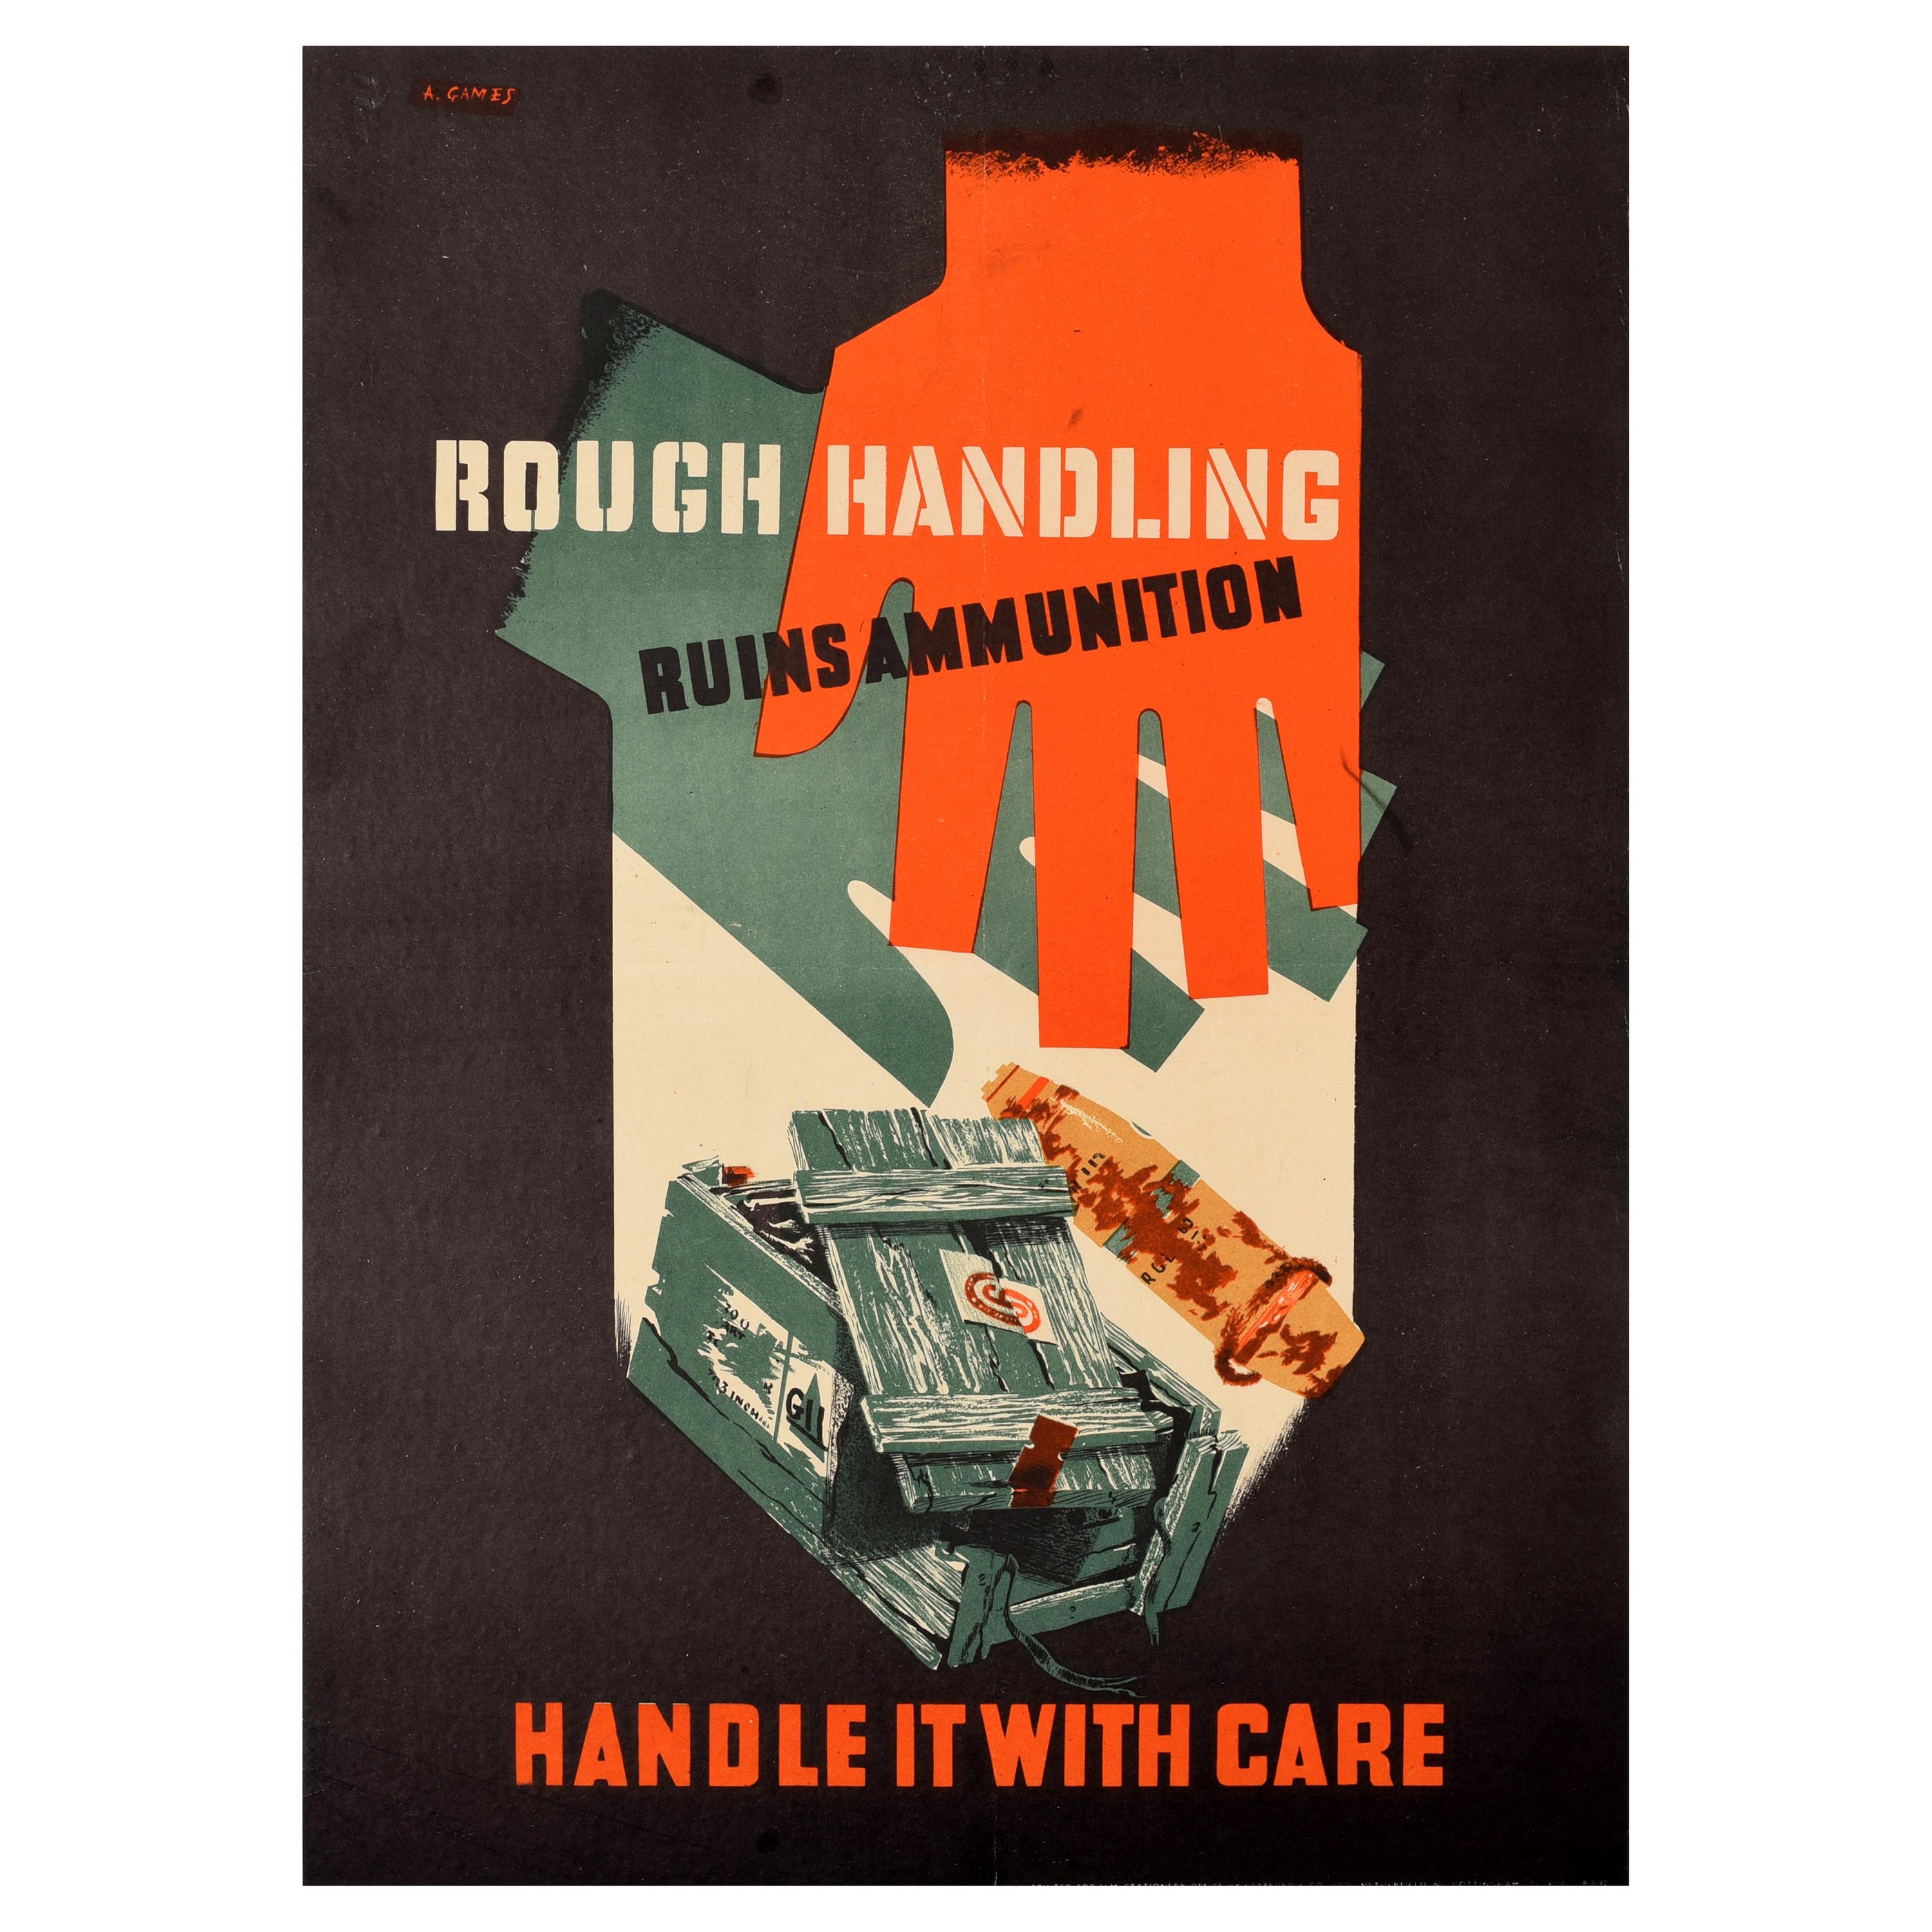 Original Vintage WWII Poster Rough Handling Ruins Ammunition Safety Care Warning For Sale